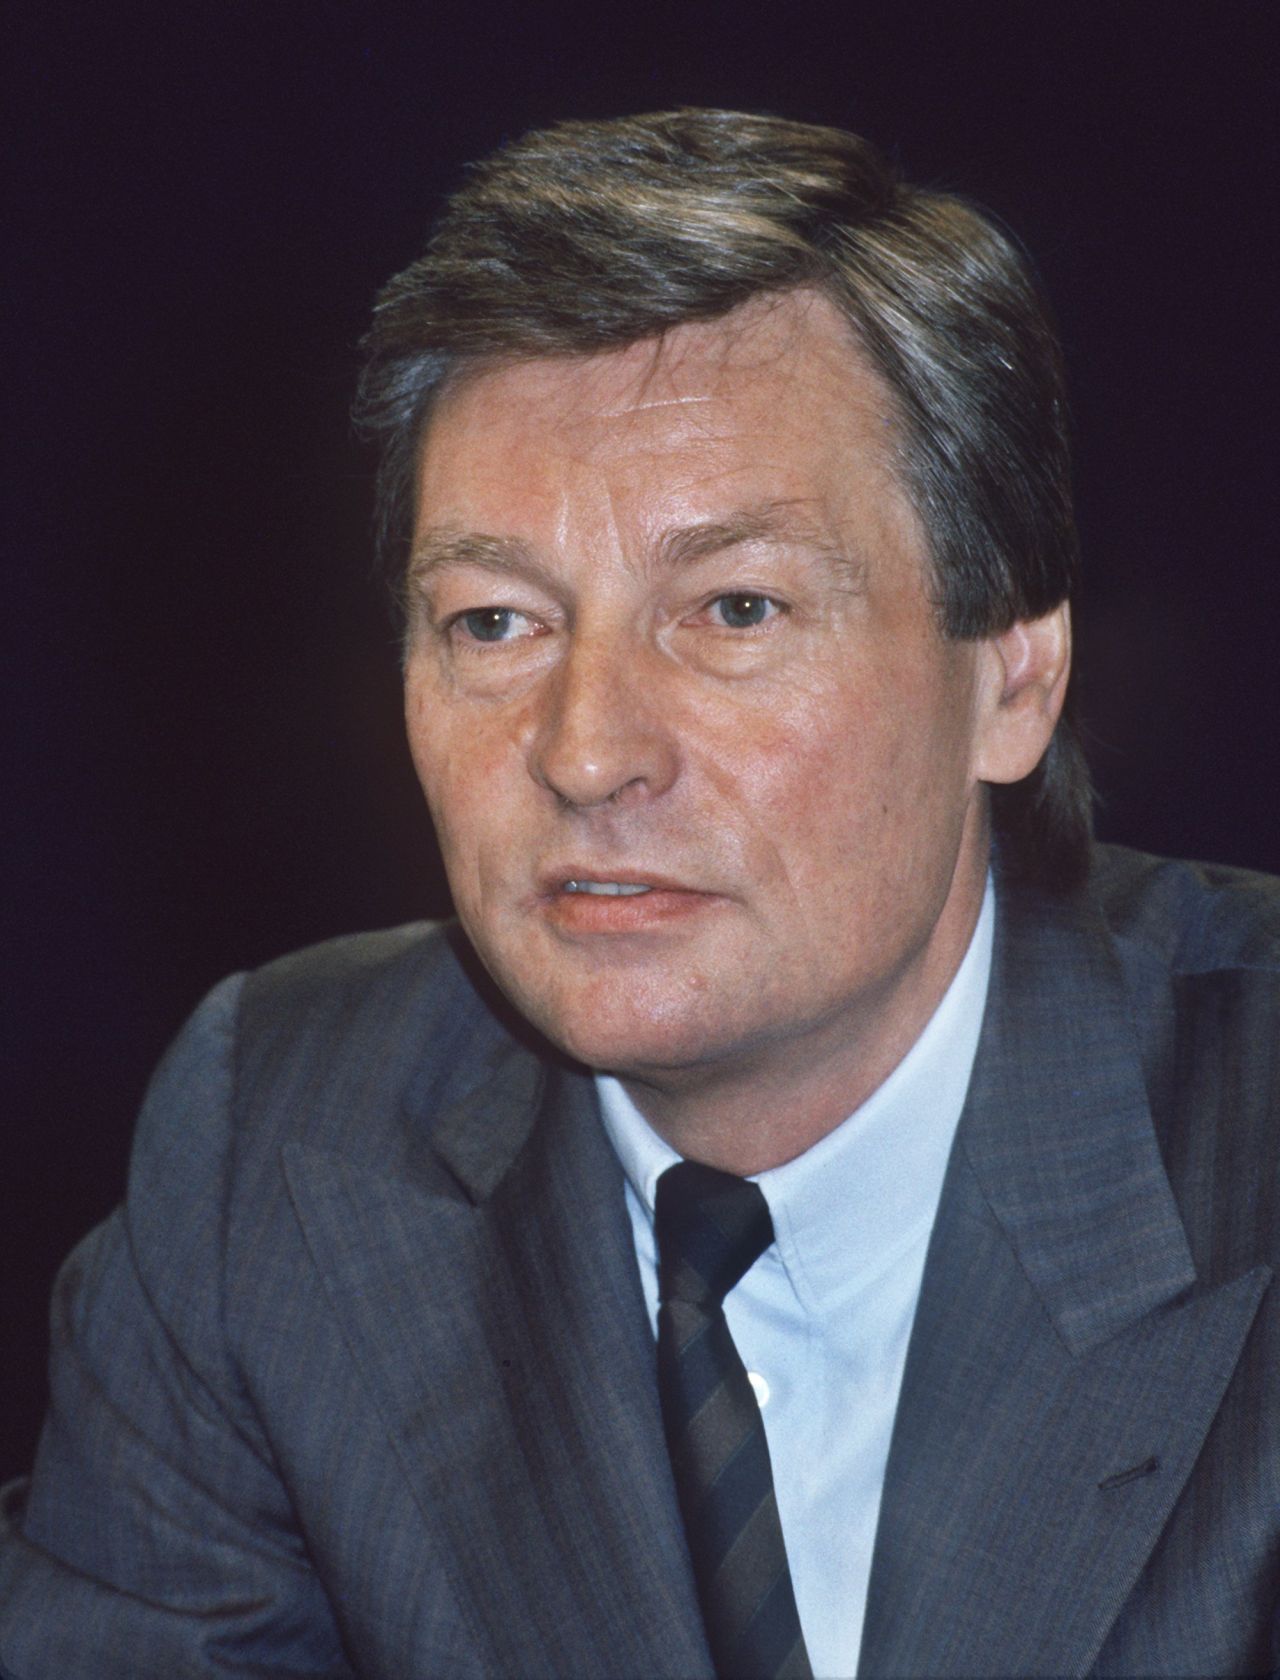 Porträtfoto von Alfred Herrhausen, Vorstandssprecher der Deutschen Bank, 1988.